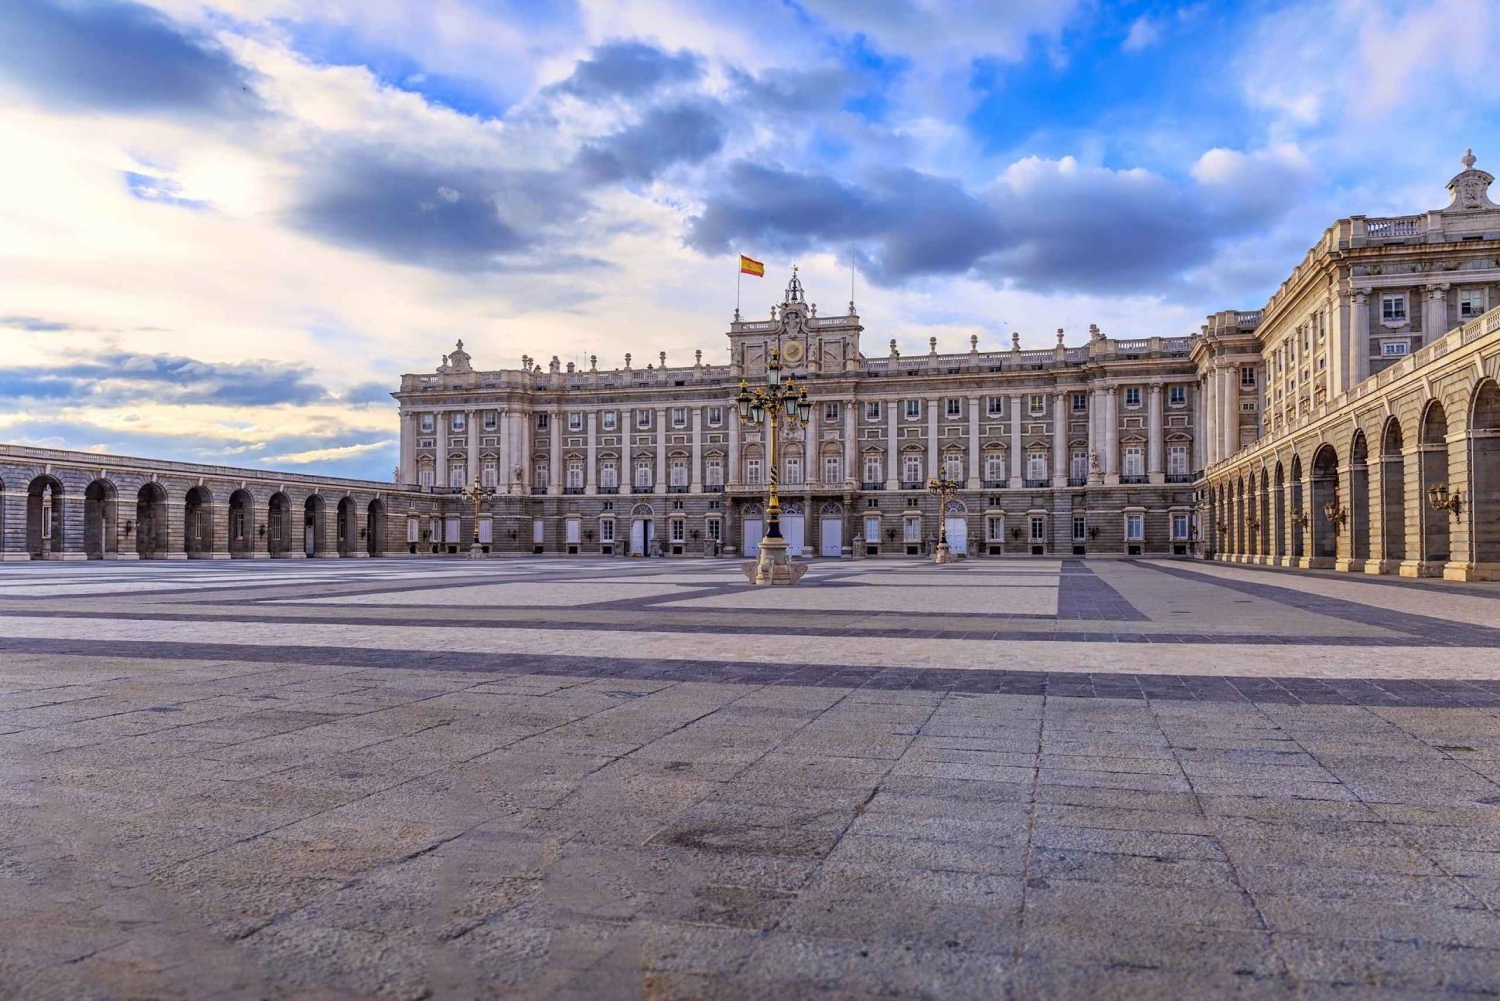 Madri: Excursão para grupos pequenos no Palácio Real e Dinastia Habsburgo